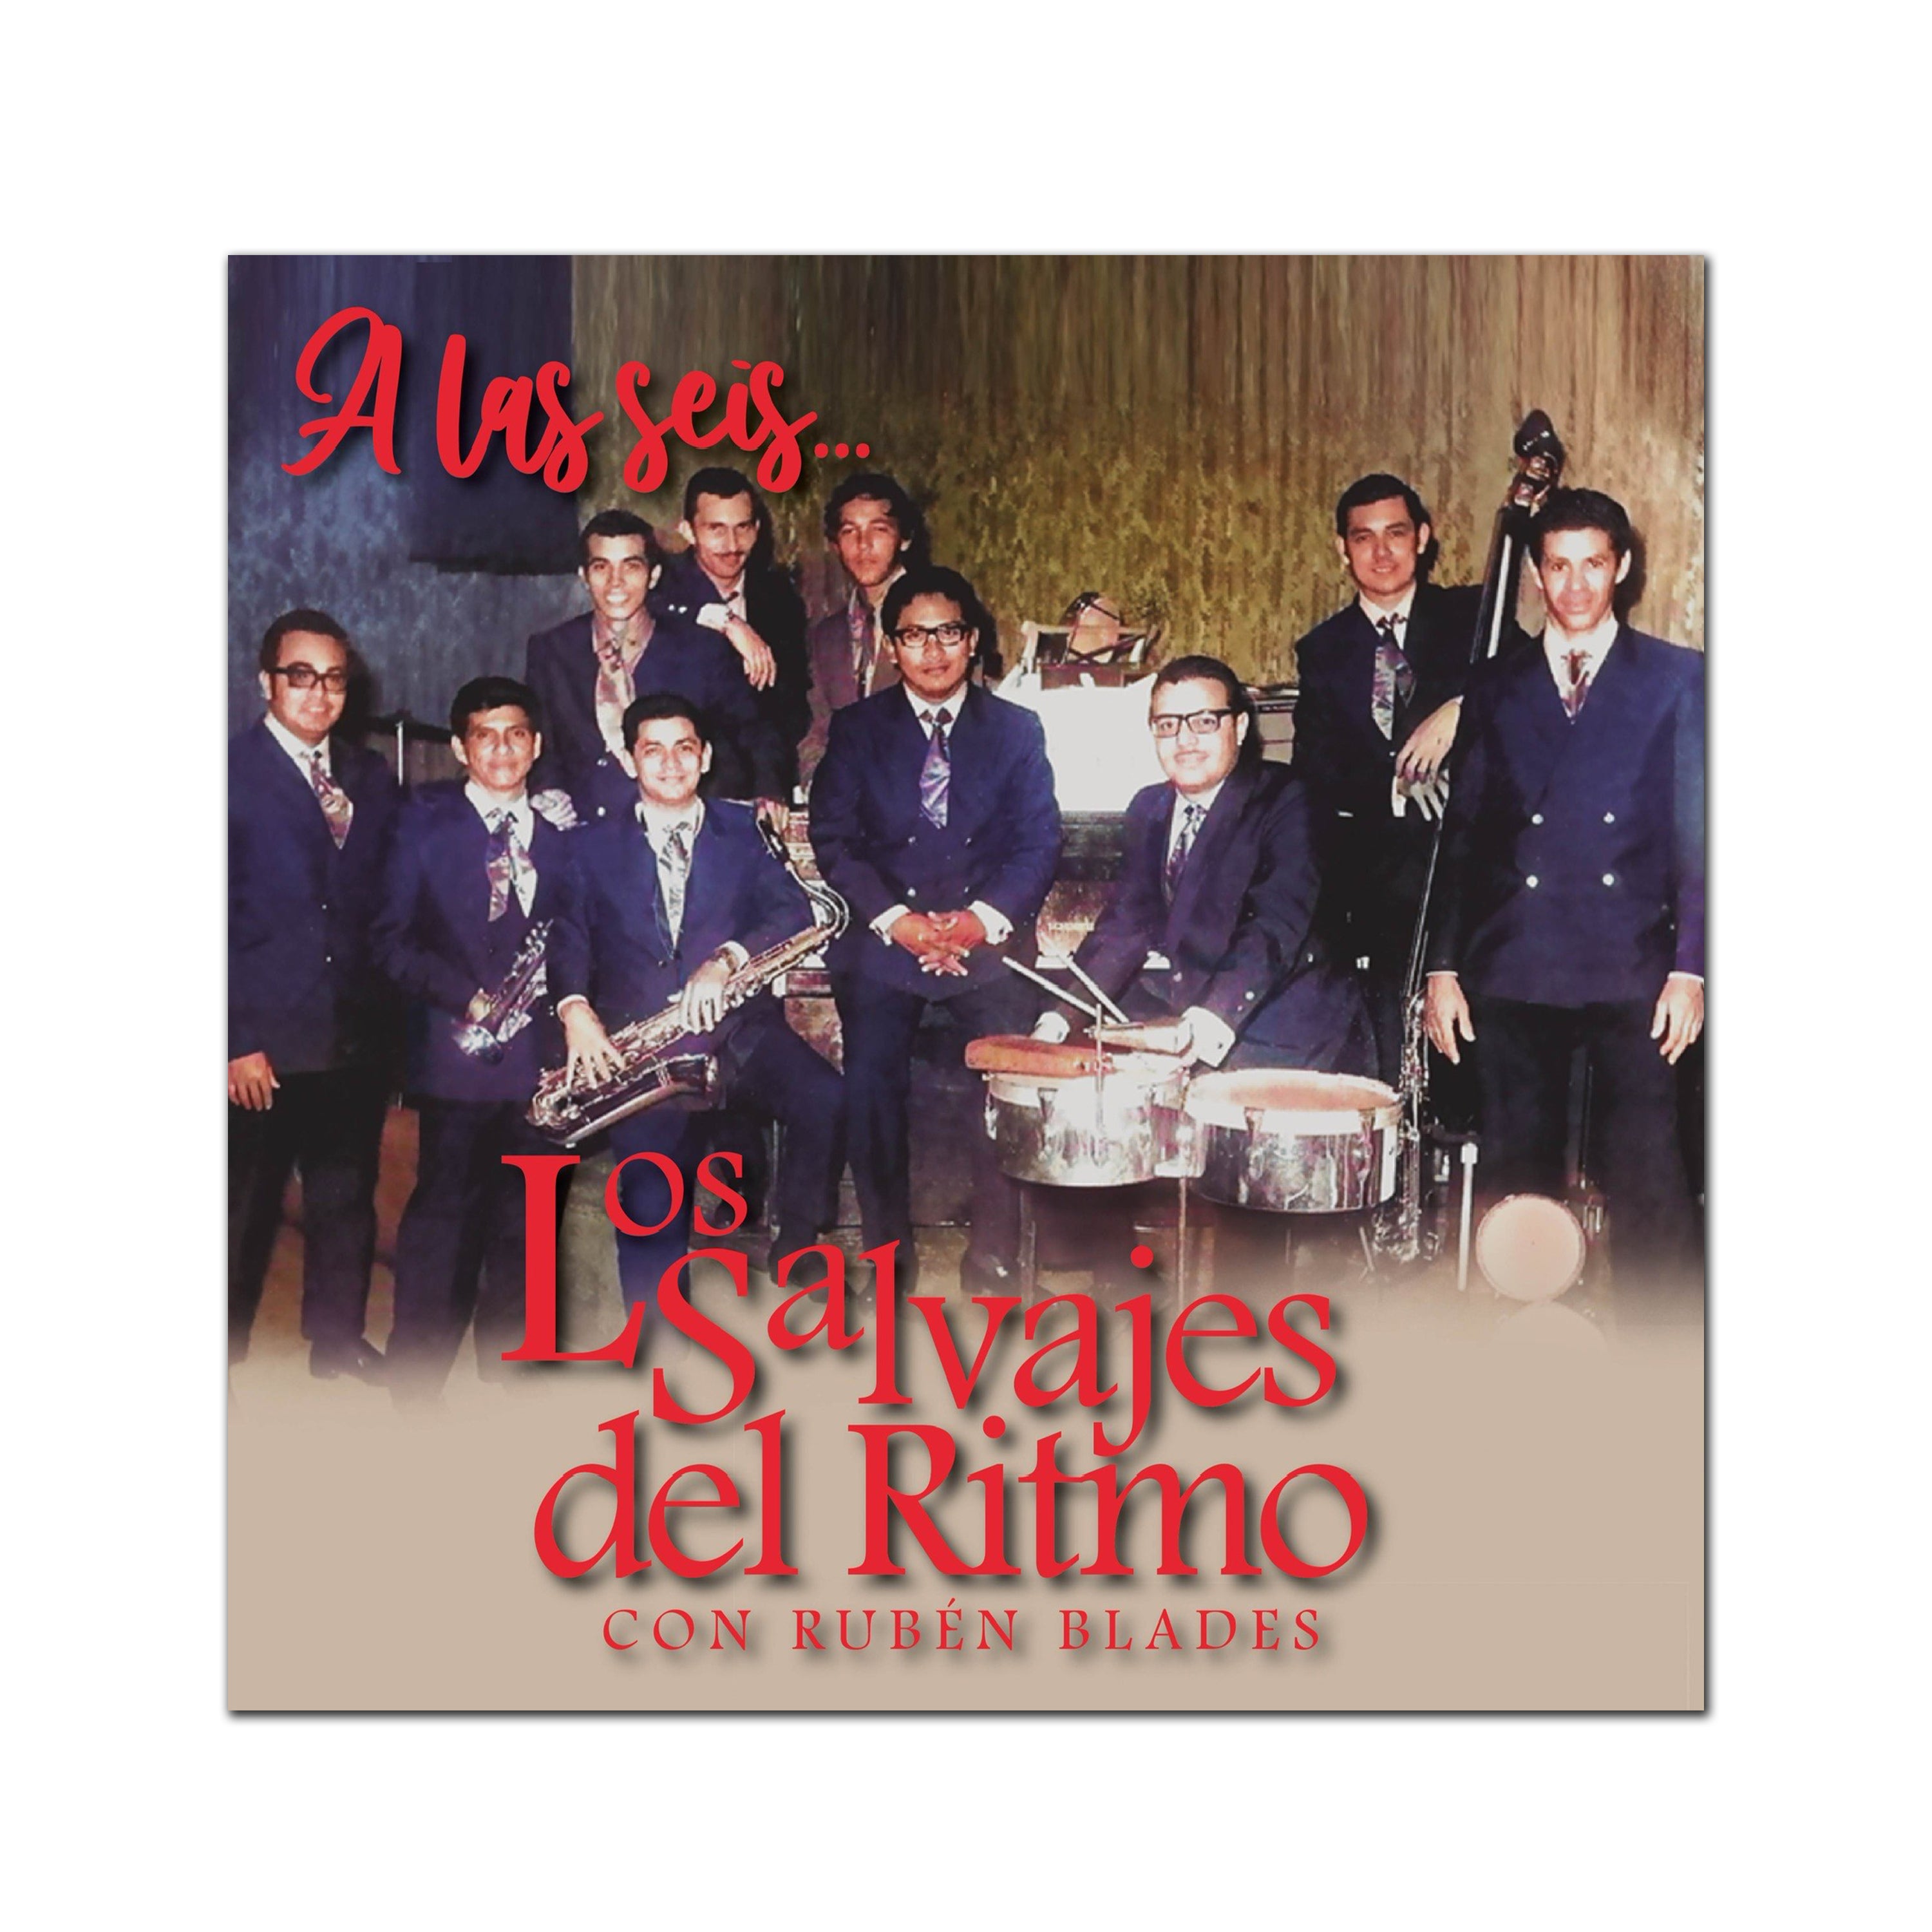 Los Salvajes del Ritmo con Rubén Blades - "A Las Seis" CD